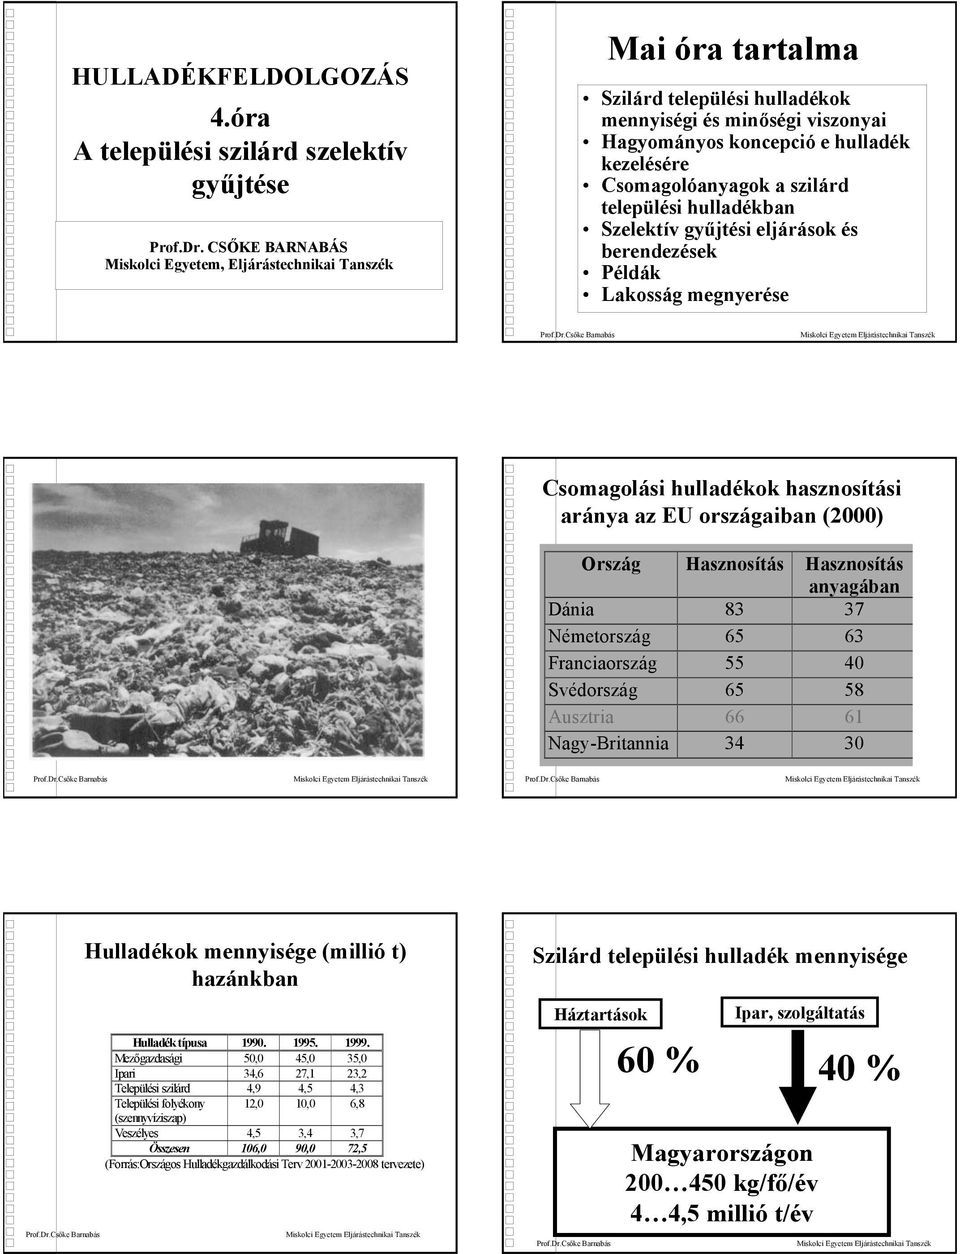 a szilárd települési hulladékban Szelektív gyűjtési eljárások és berendezések Példák Lakosság megnyerése Csomagolási hulladékok hasznosítási aránya az EU országaiban (2000) Ország Hasznosítás